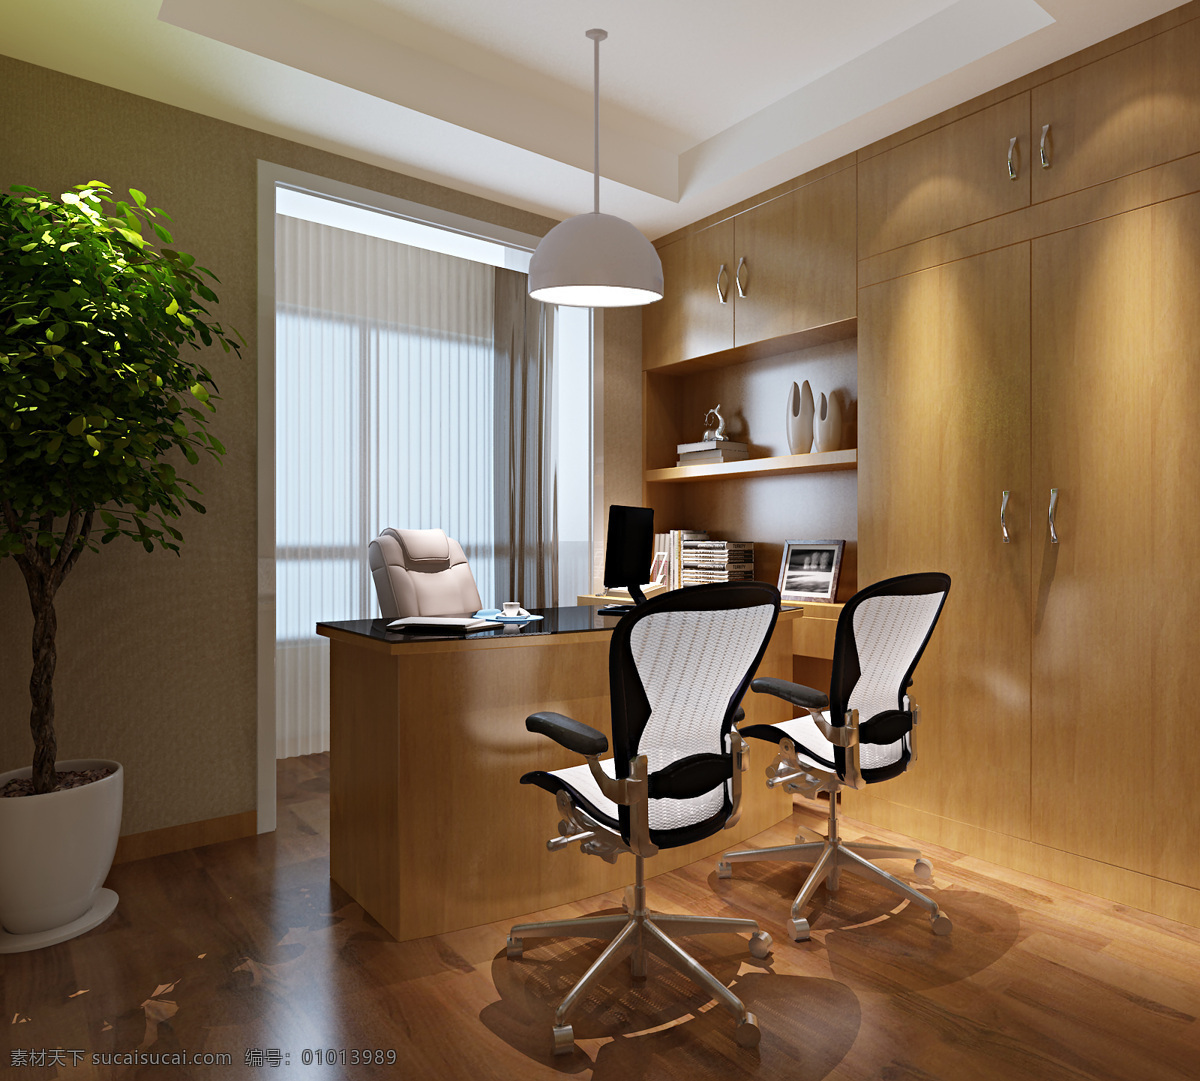 现代 时尚 小型 办公室 工装 装修 效果图 木地板 黑白椅子 工装装修 工装效果图 木制柜子